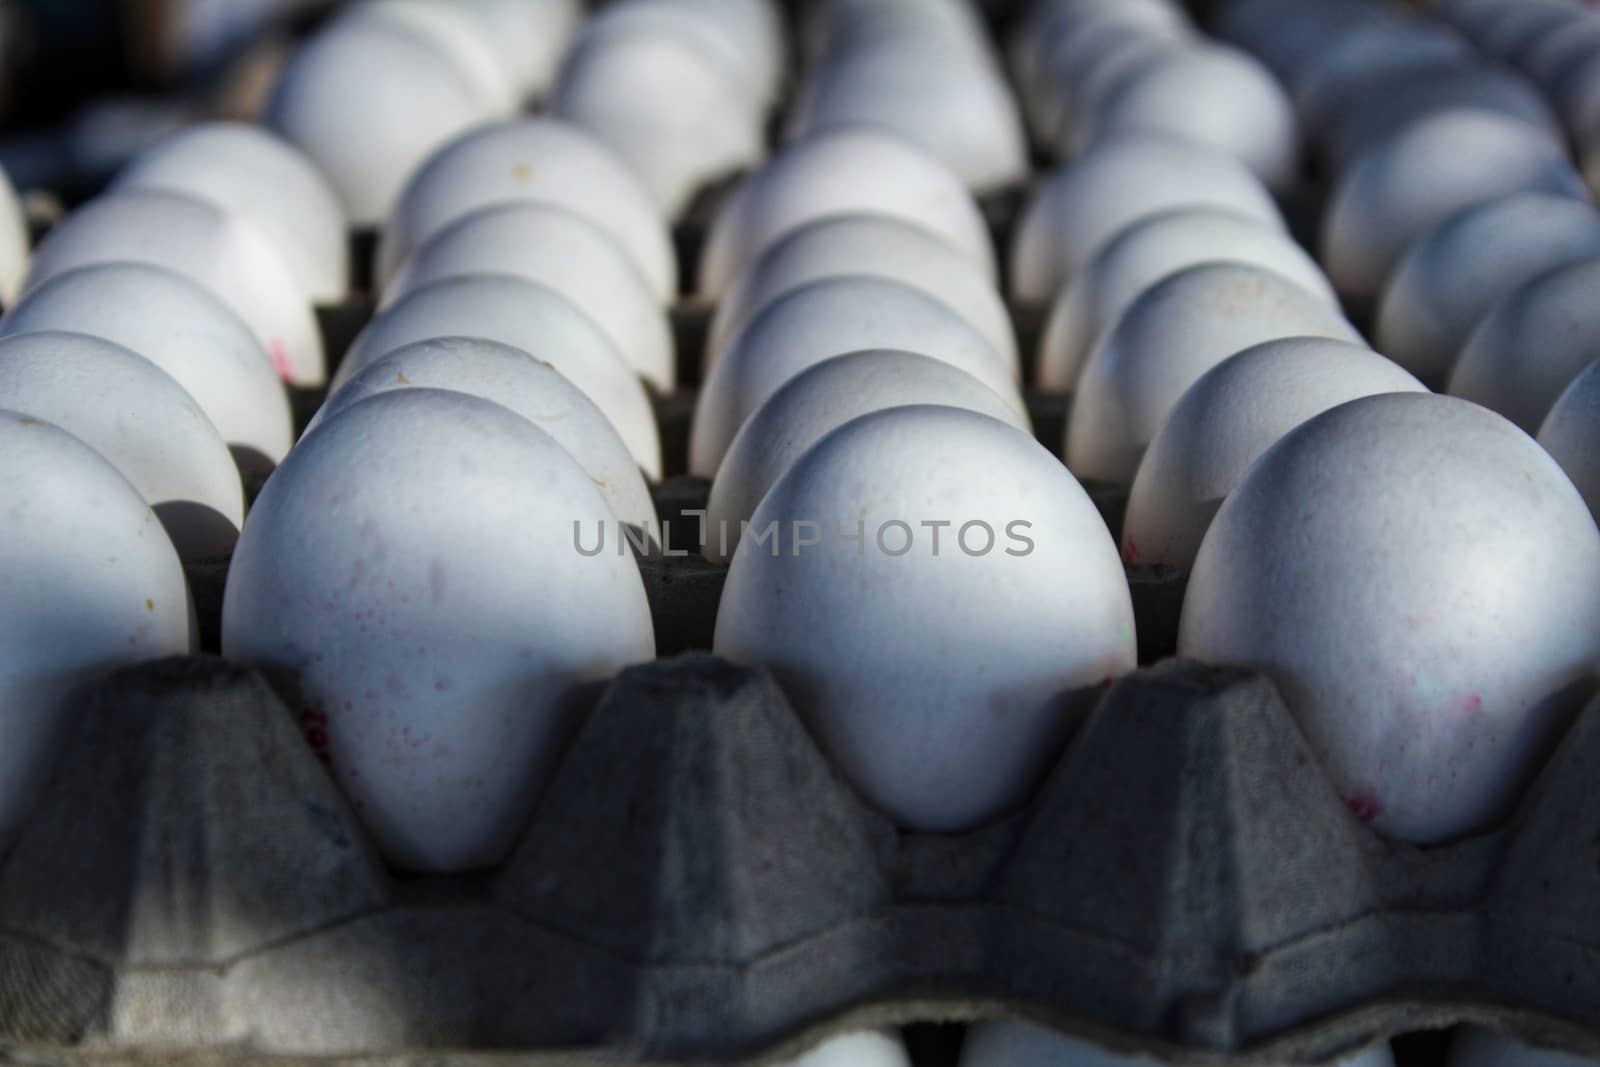 White fresh eggs at a market stall in Santa Pola, Alicante, Spain